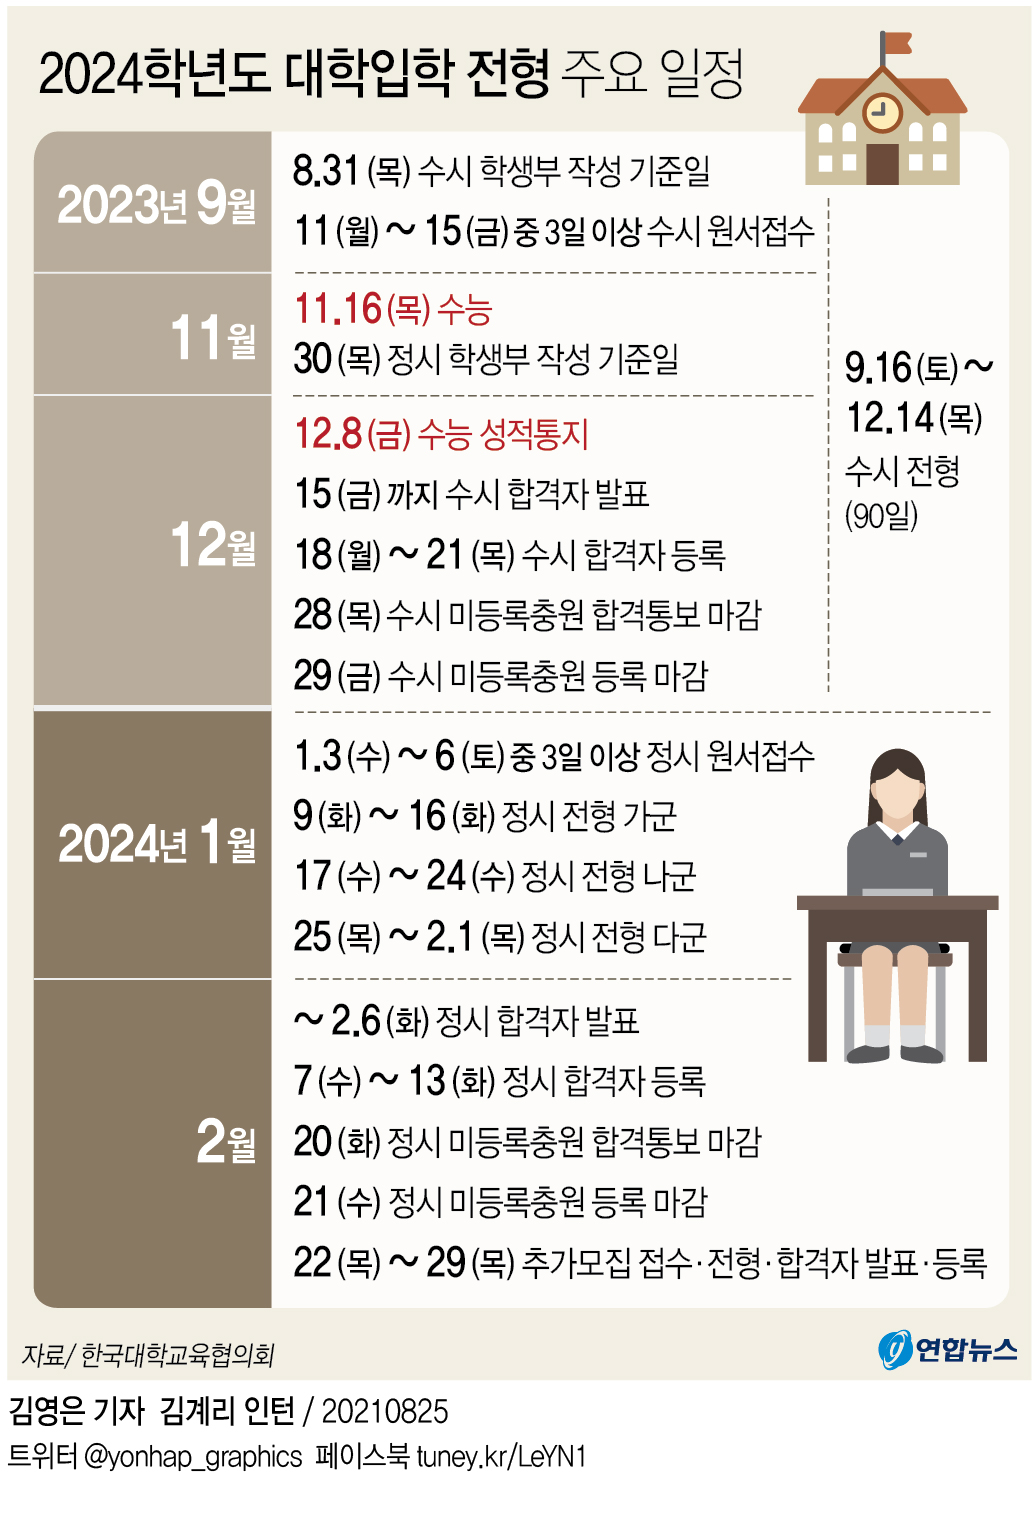 [그래픽] 2024학년도 대학입학 전형 주요 일정 연합뉴스